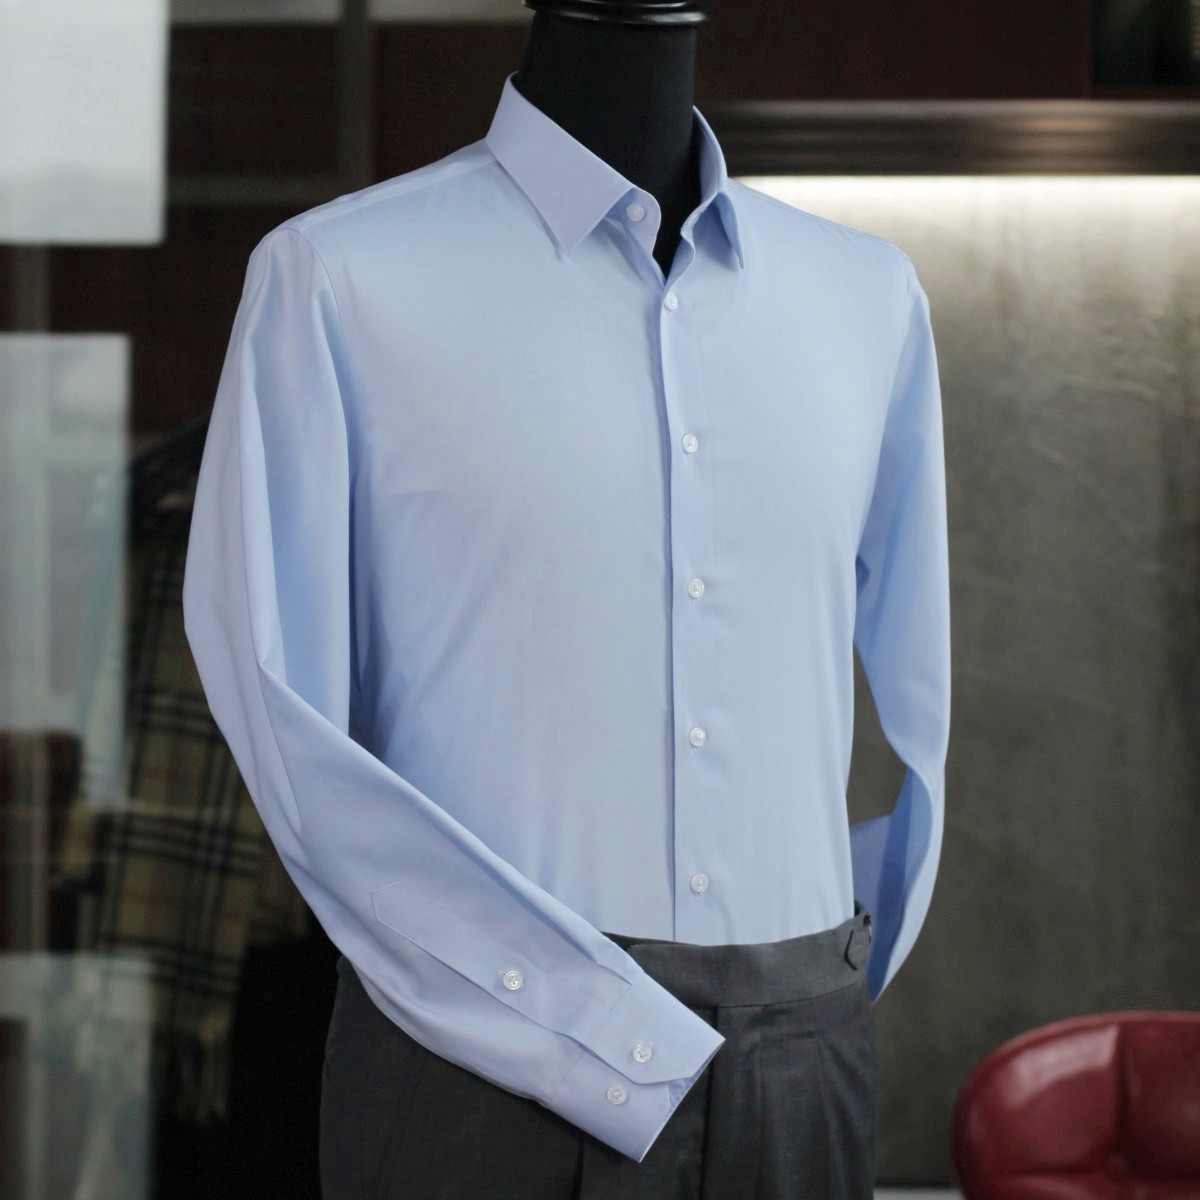 NEP 大众型标准剪裁男长袖/短袖衬衫DP全免烫工艺 多色可选